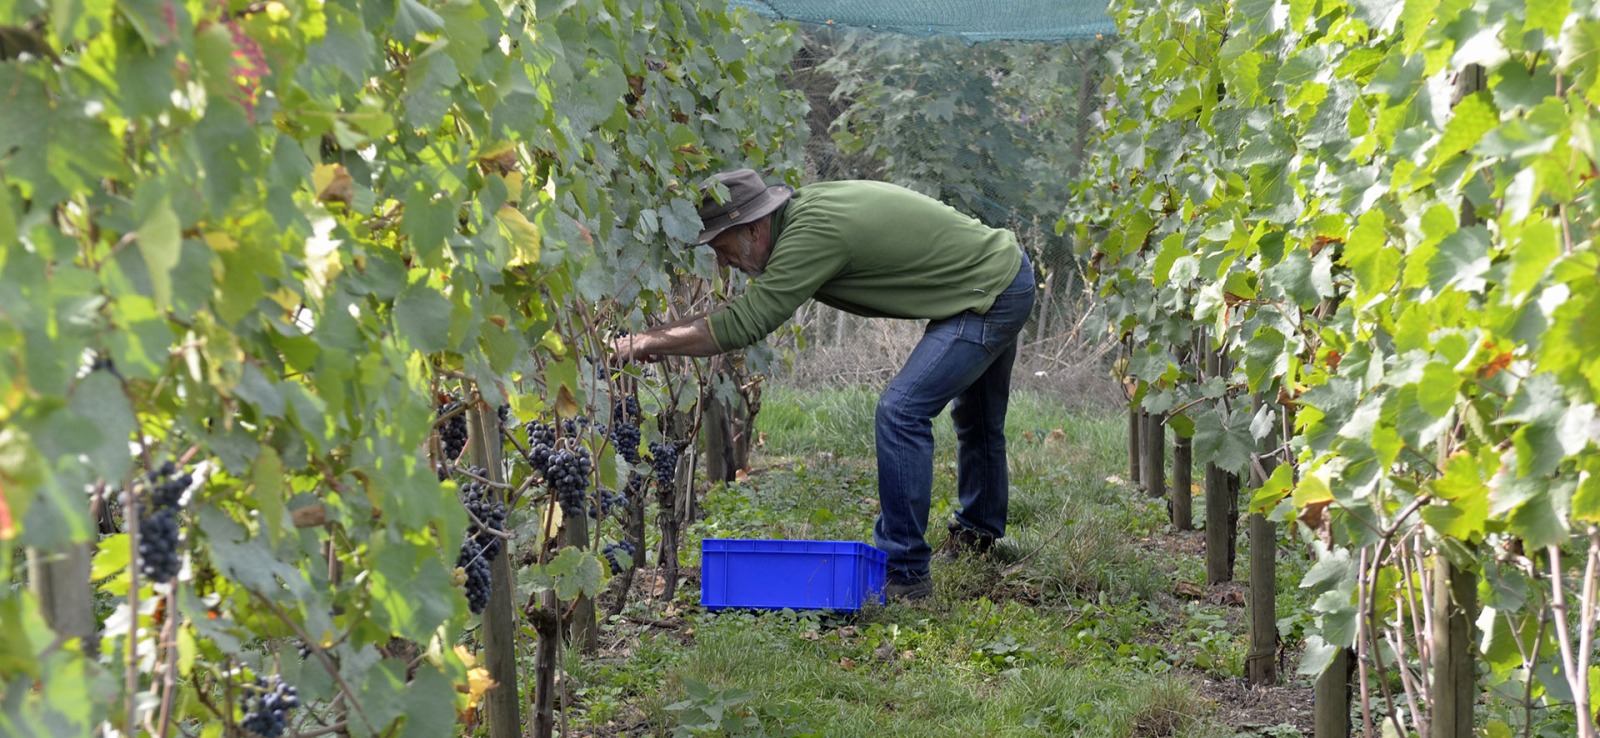 Jean Galler cueille du raisin dans son vignoble à Chaudfontaine - Vignoble Septem Triones - Producteur de vin bio belge